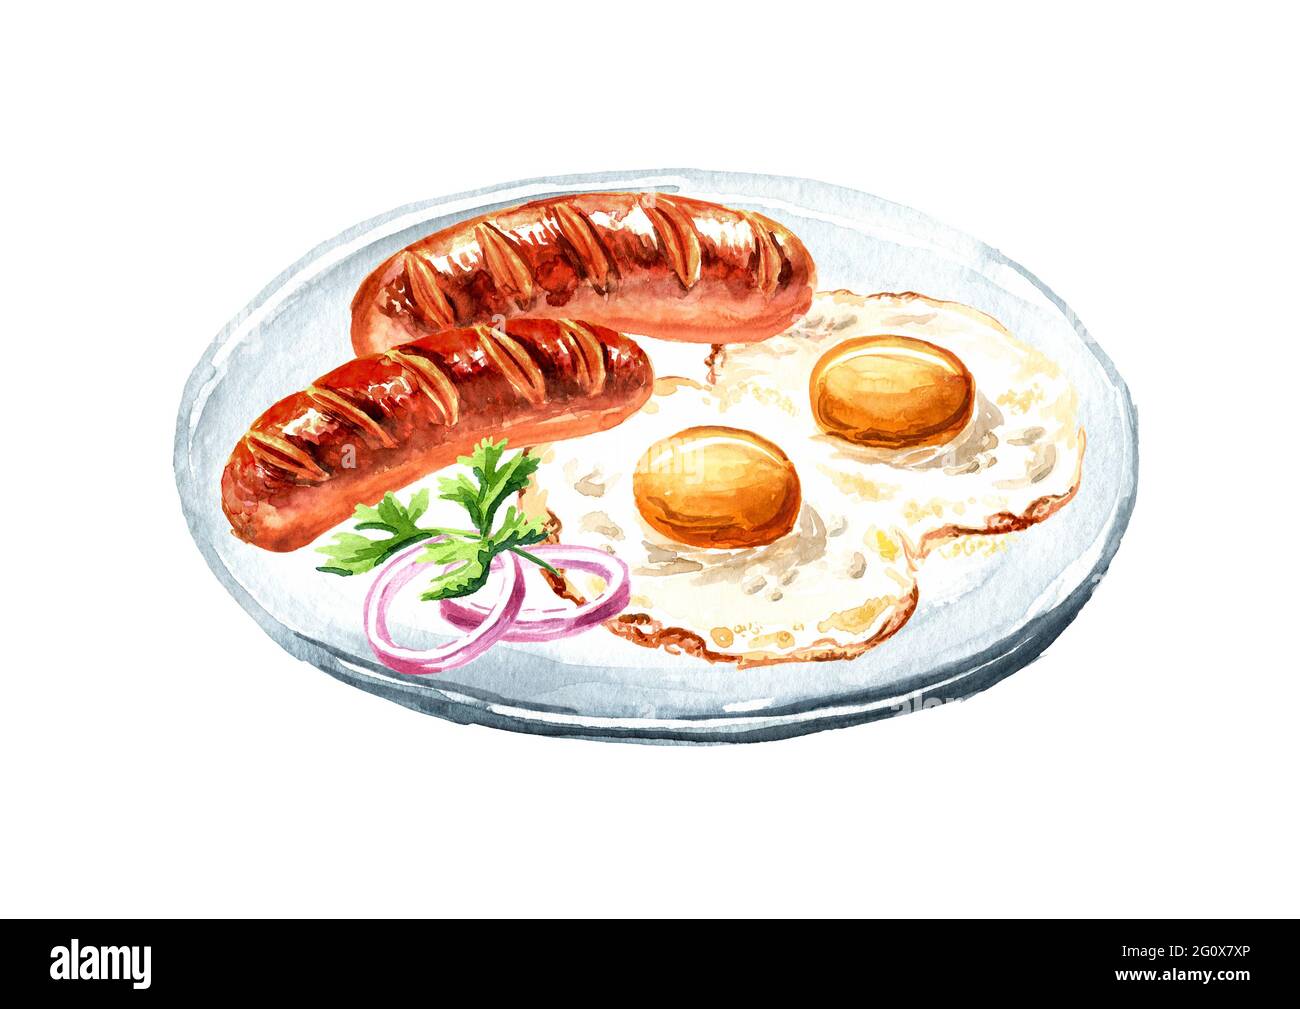 Petit-déjeuner anglais traditionnel avec œufs frits et saucisses. Illustration aquarelle dessinée à la main isolée sur fond blanc Banque D'Images